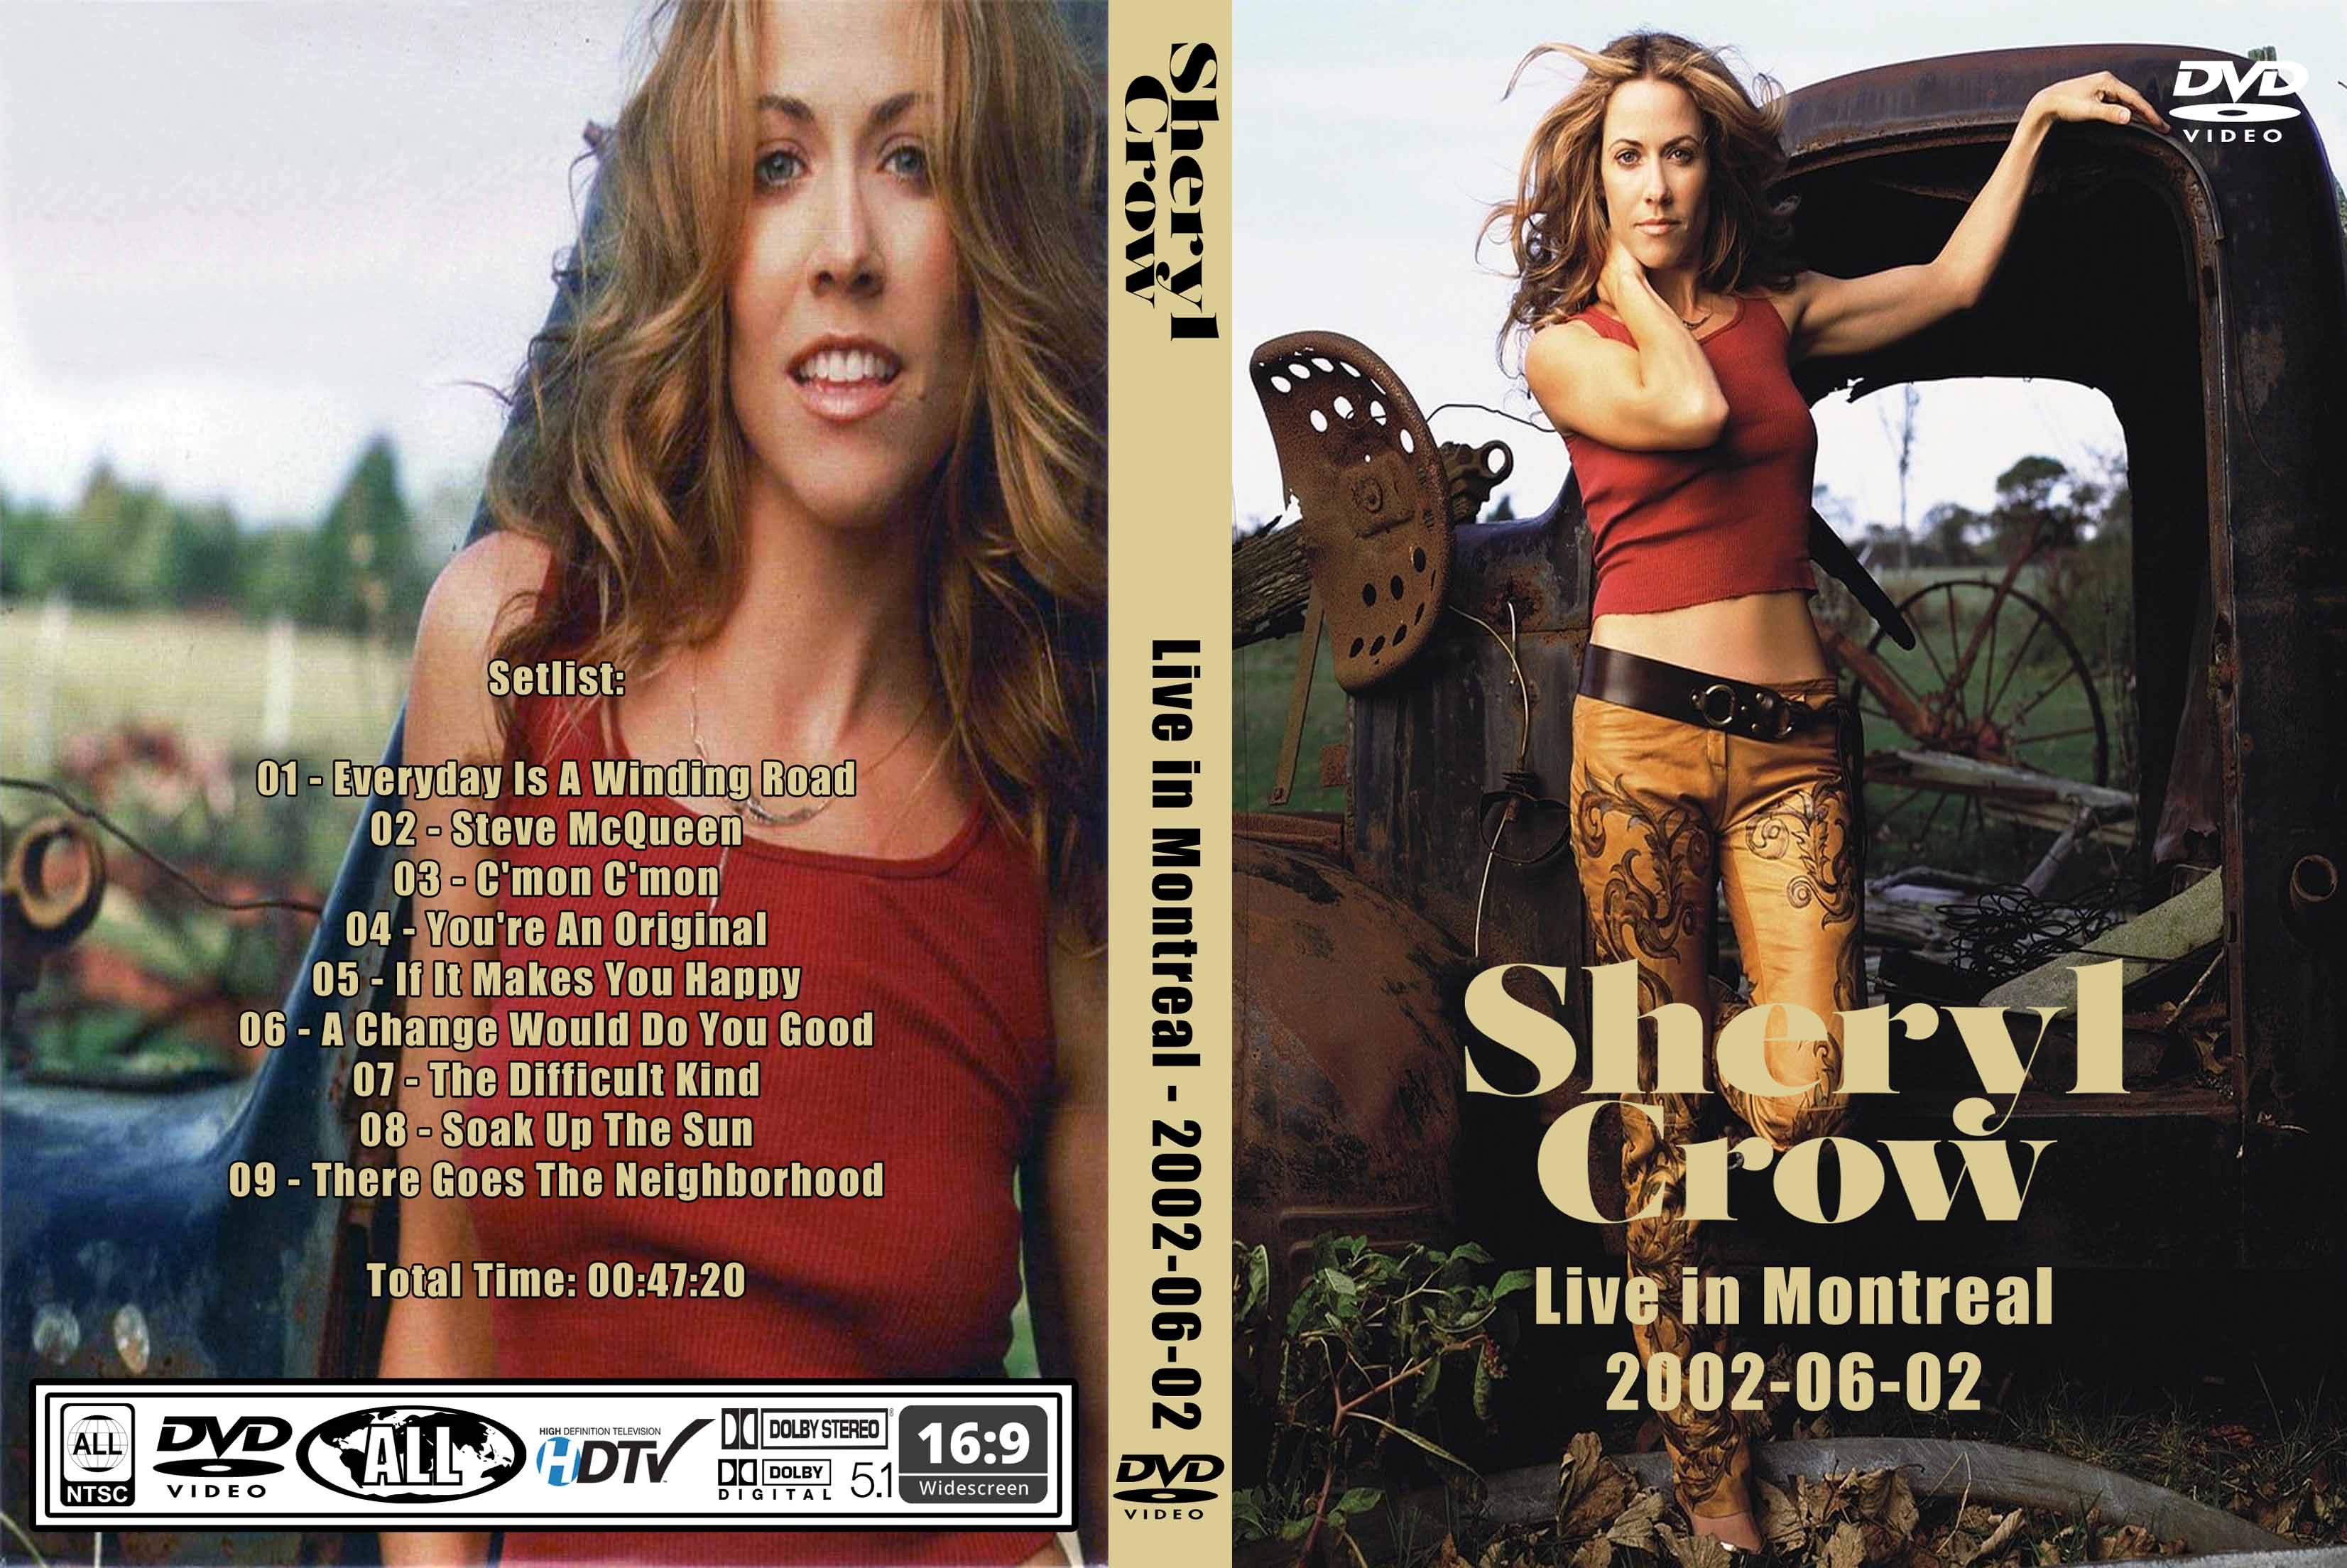 sheryl crow tour 2002